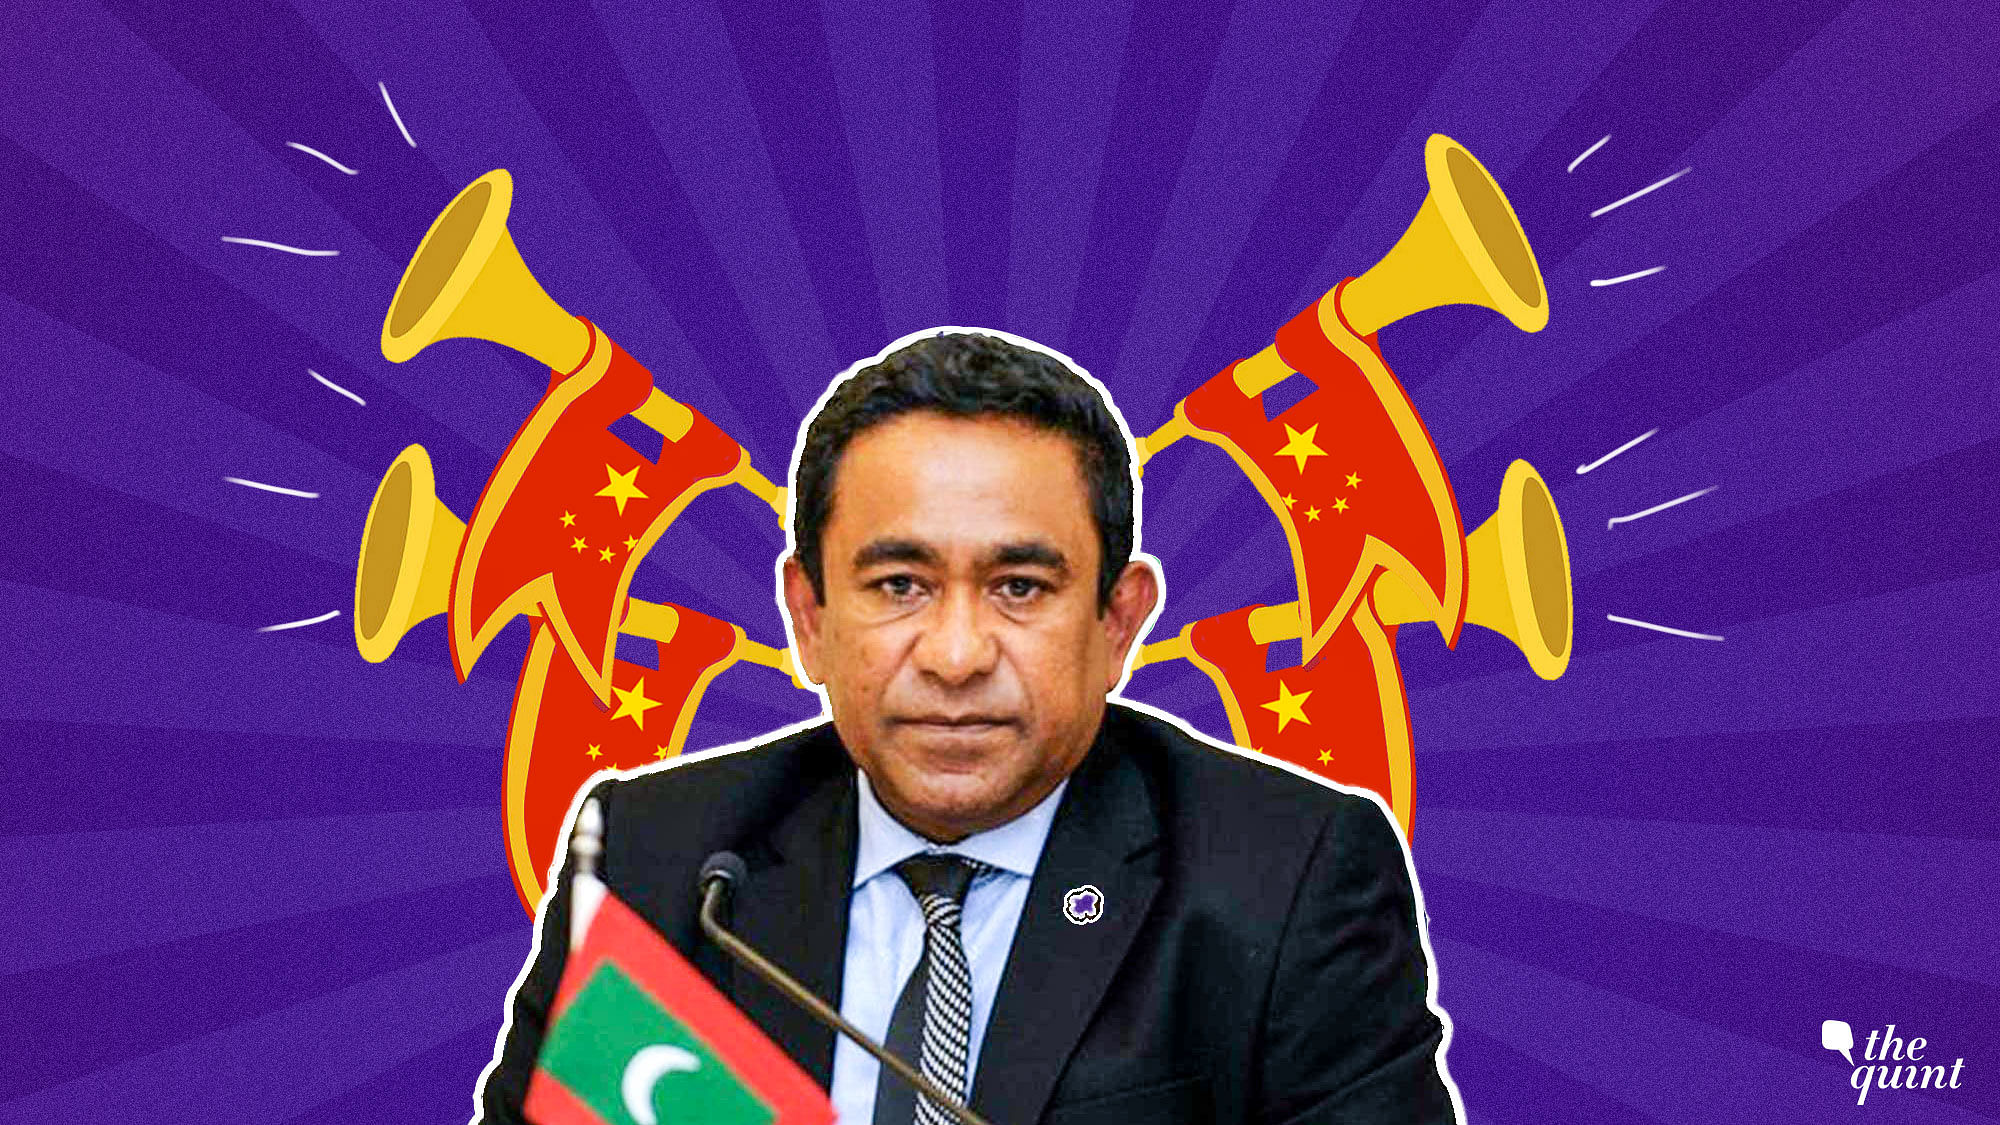 Maldivian President Yameen has been tilting towards China at India’s expense.